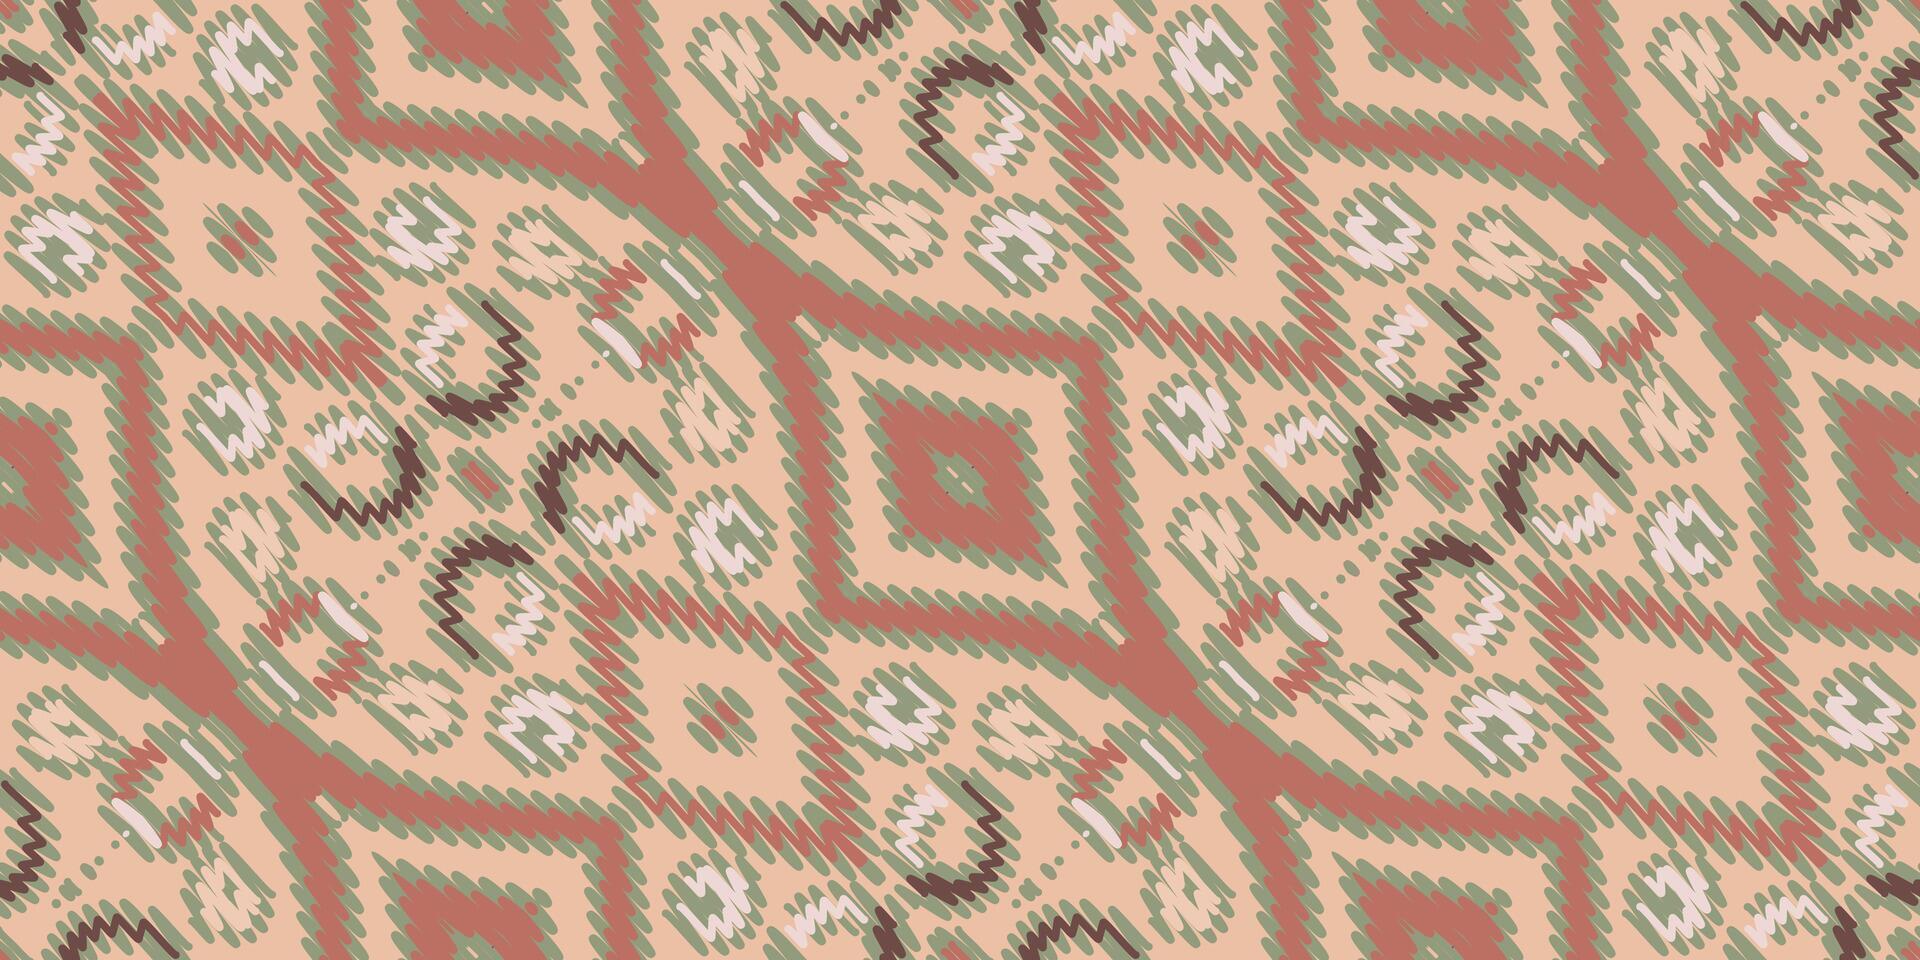 Corbata colorante modelo sin costura pañuelo impresión seda motivo bordado, ikat bordado vector diseño para impresión cordón modelo turco cerámico antiguo Egipto Arte jacquard modelo